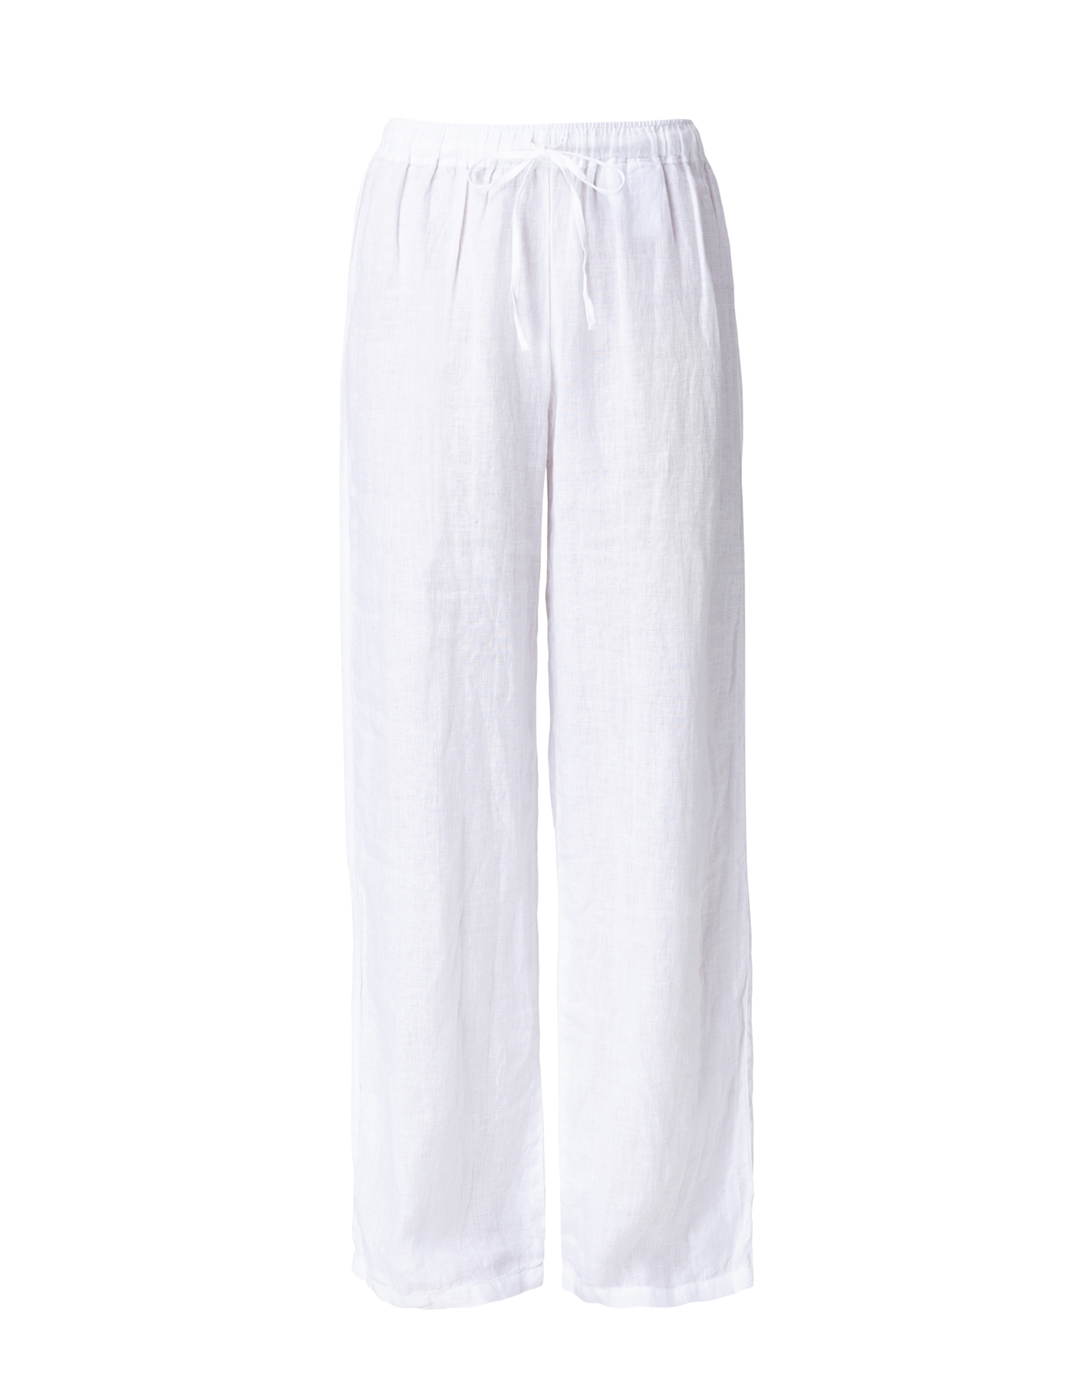 White Linen Wide Leg Drawstring Pant